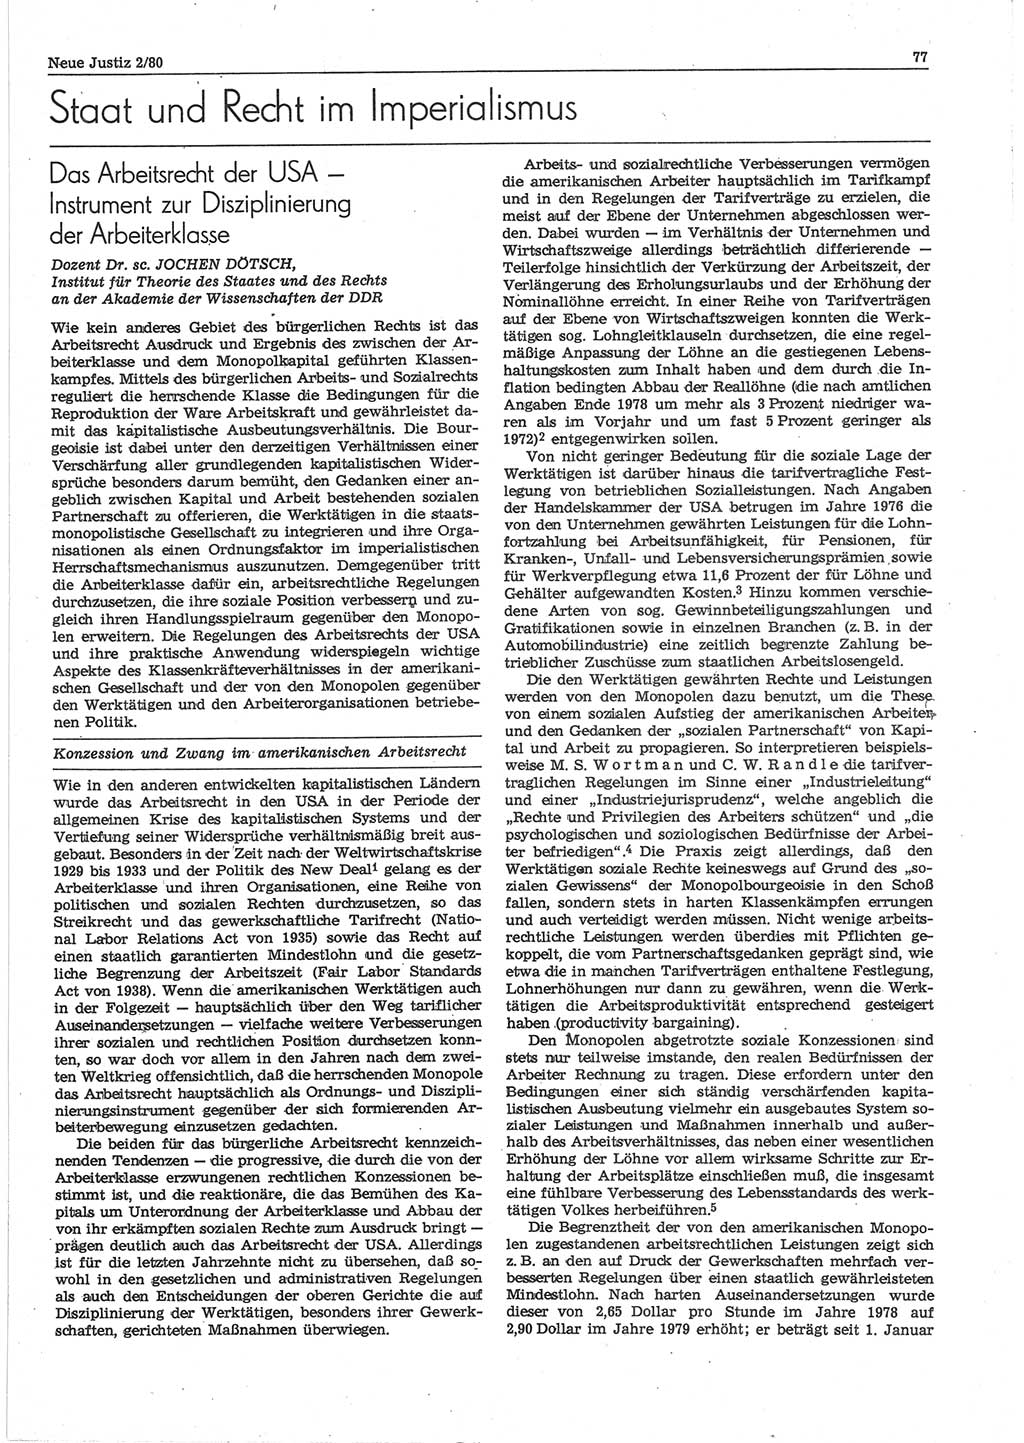 Neue Justiz (NJ), Zeitschrift für sozialistisches Recht und Gesetzlichkeit [Deutsche Demokratische Republik (DDR)], 34. Jahrgang 1980, Seite 77 (NJ DDR 1980, S. 77)